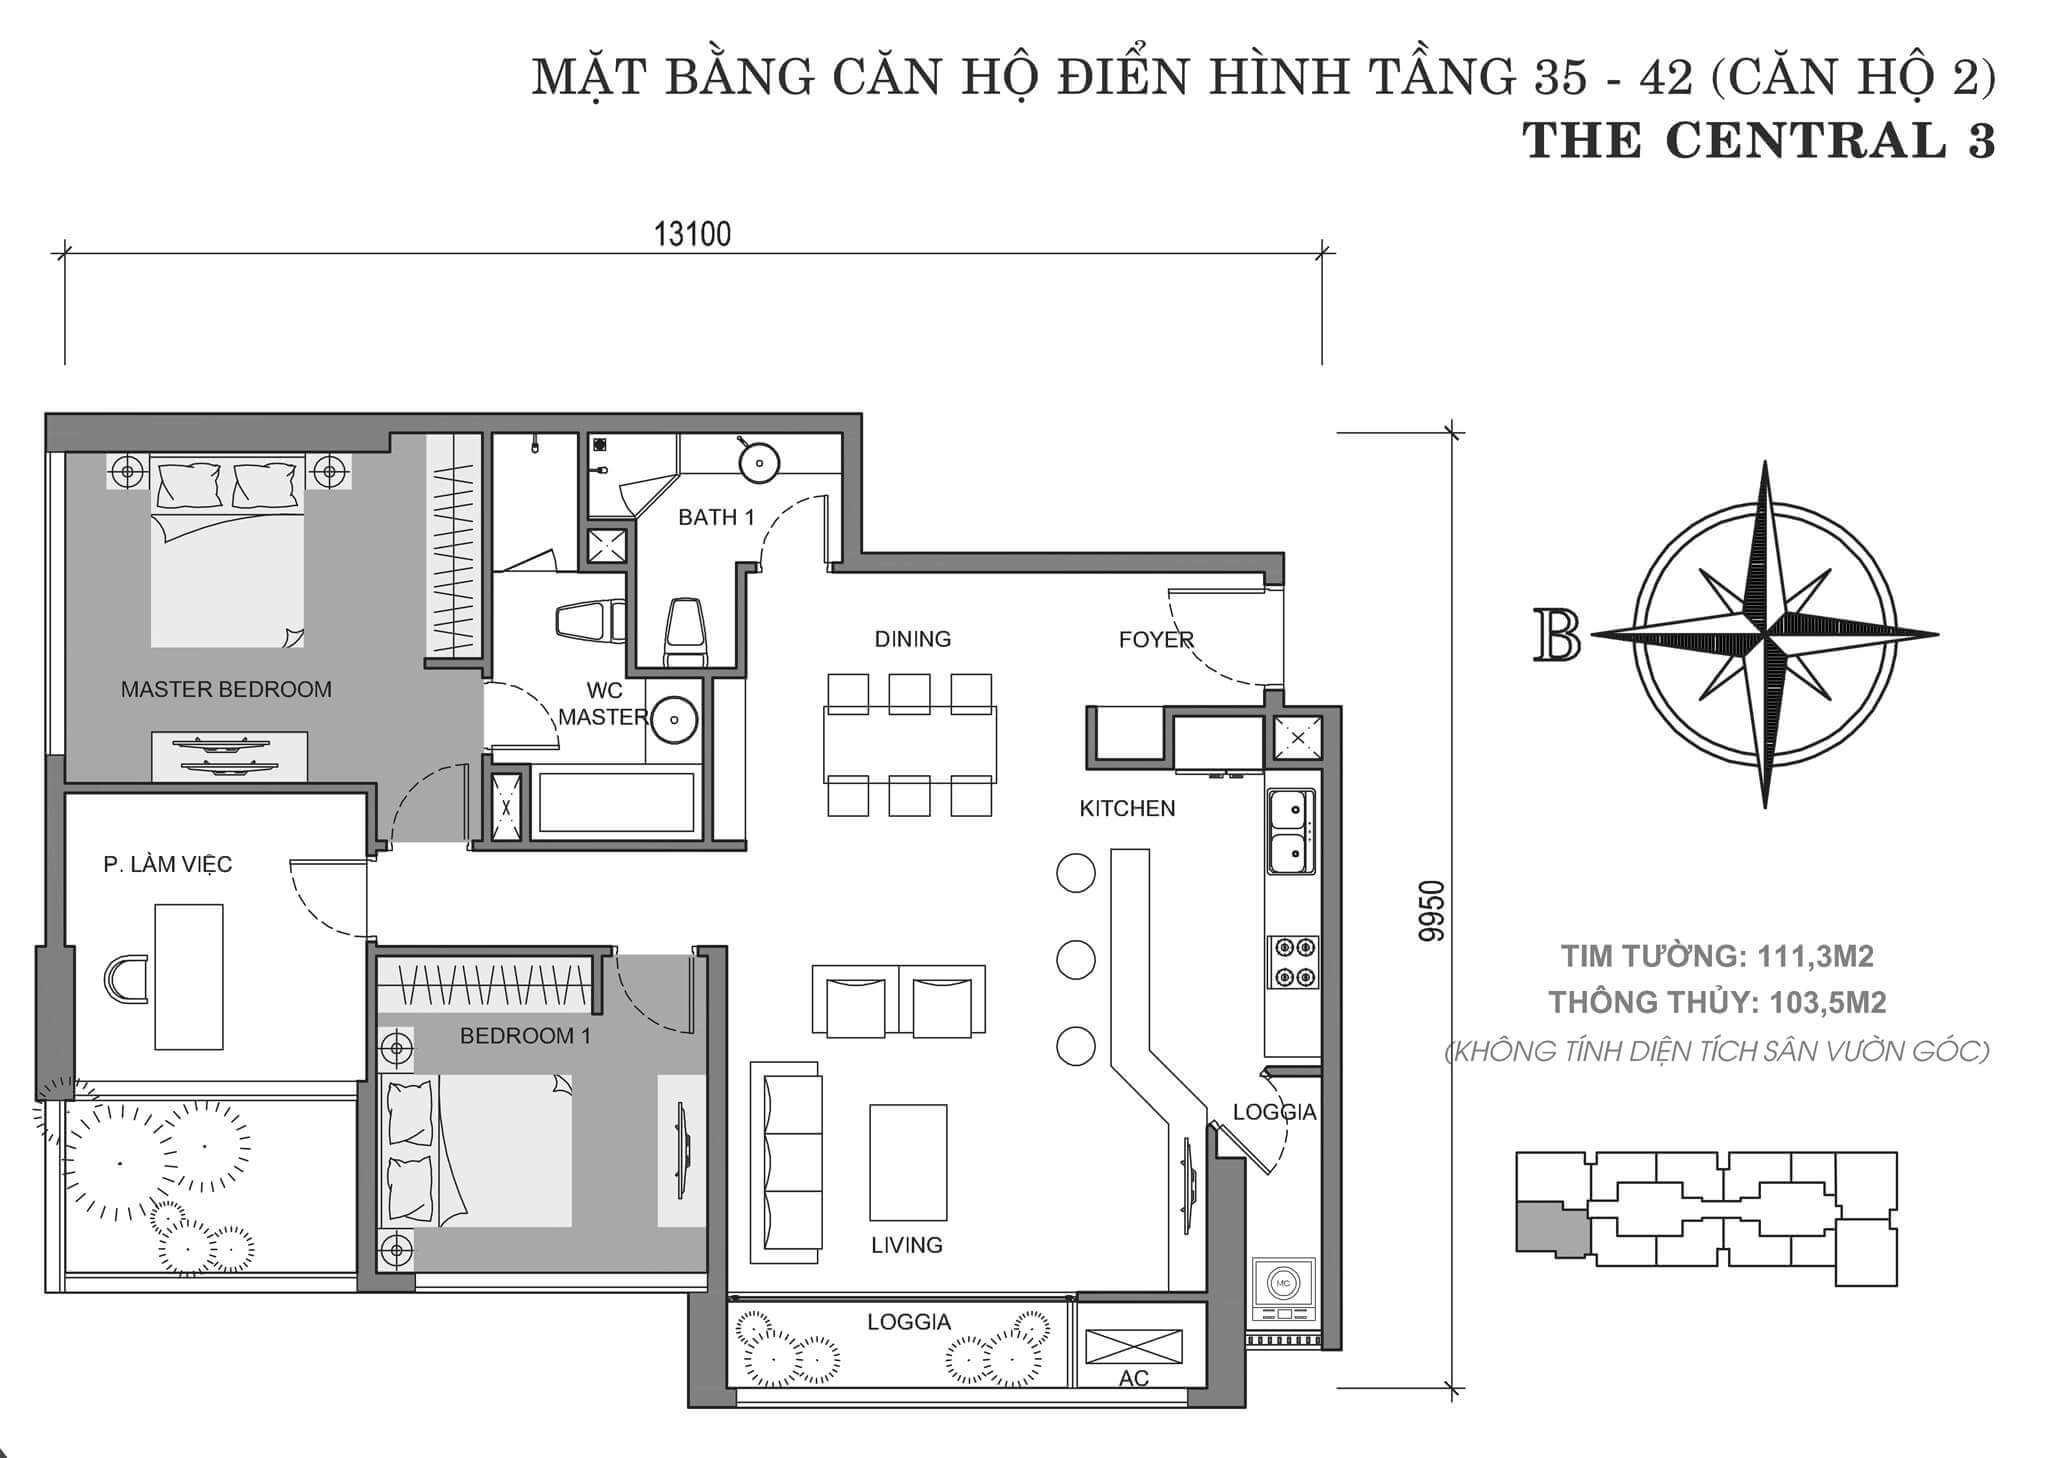 layout căn hộ số 2 tòa Central 3 tầng 35-42  